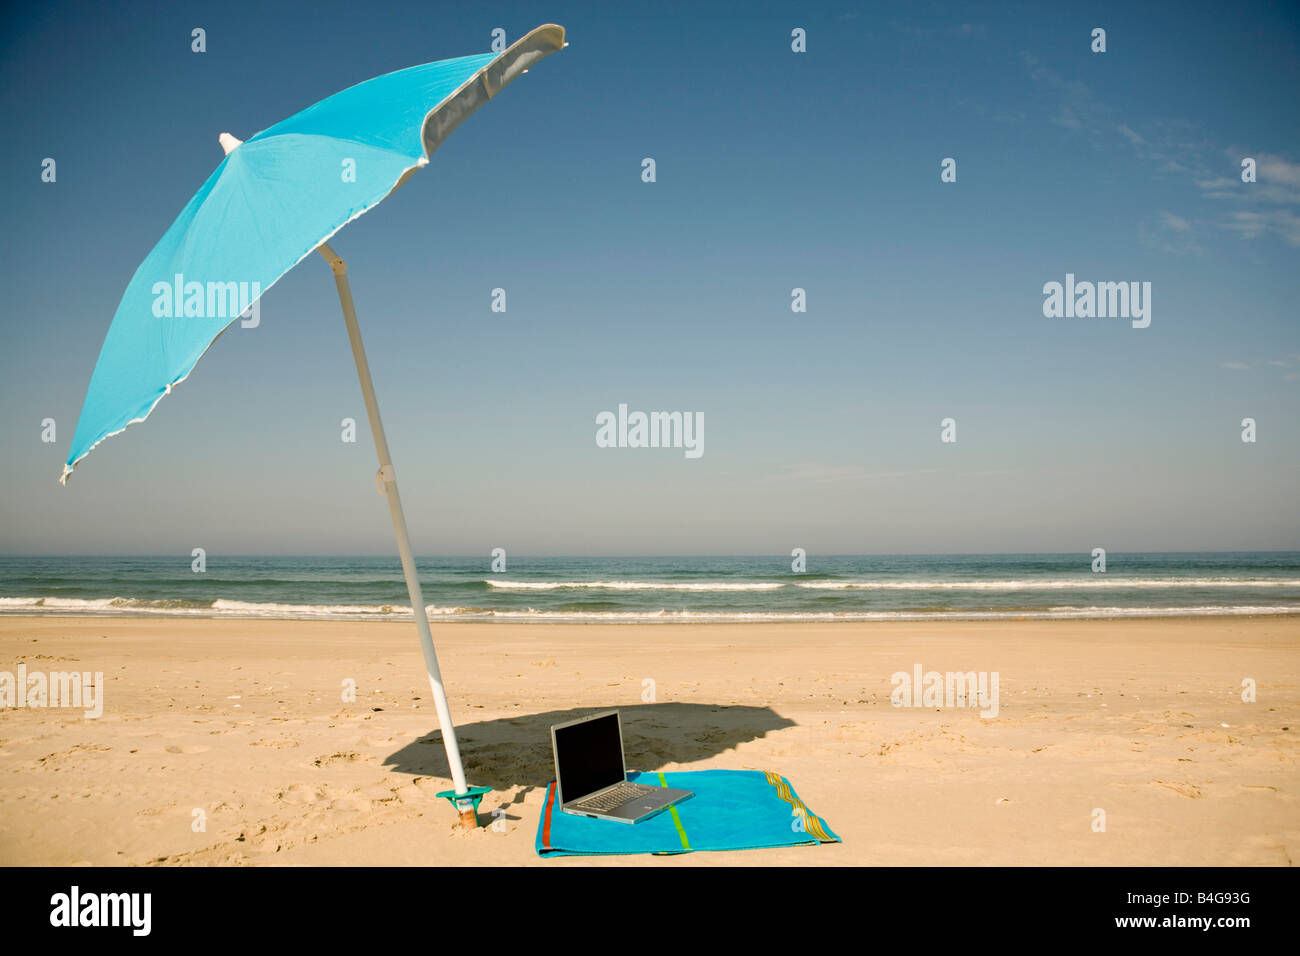 A laptop lying on a beach towel on a beach Stock Photo